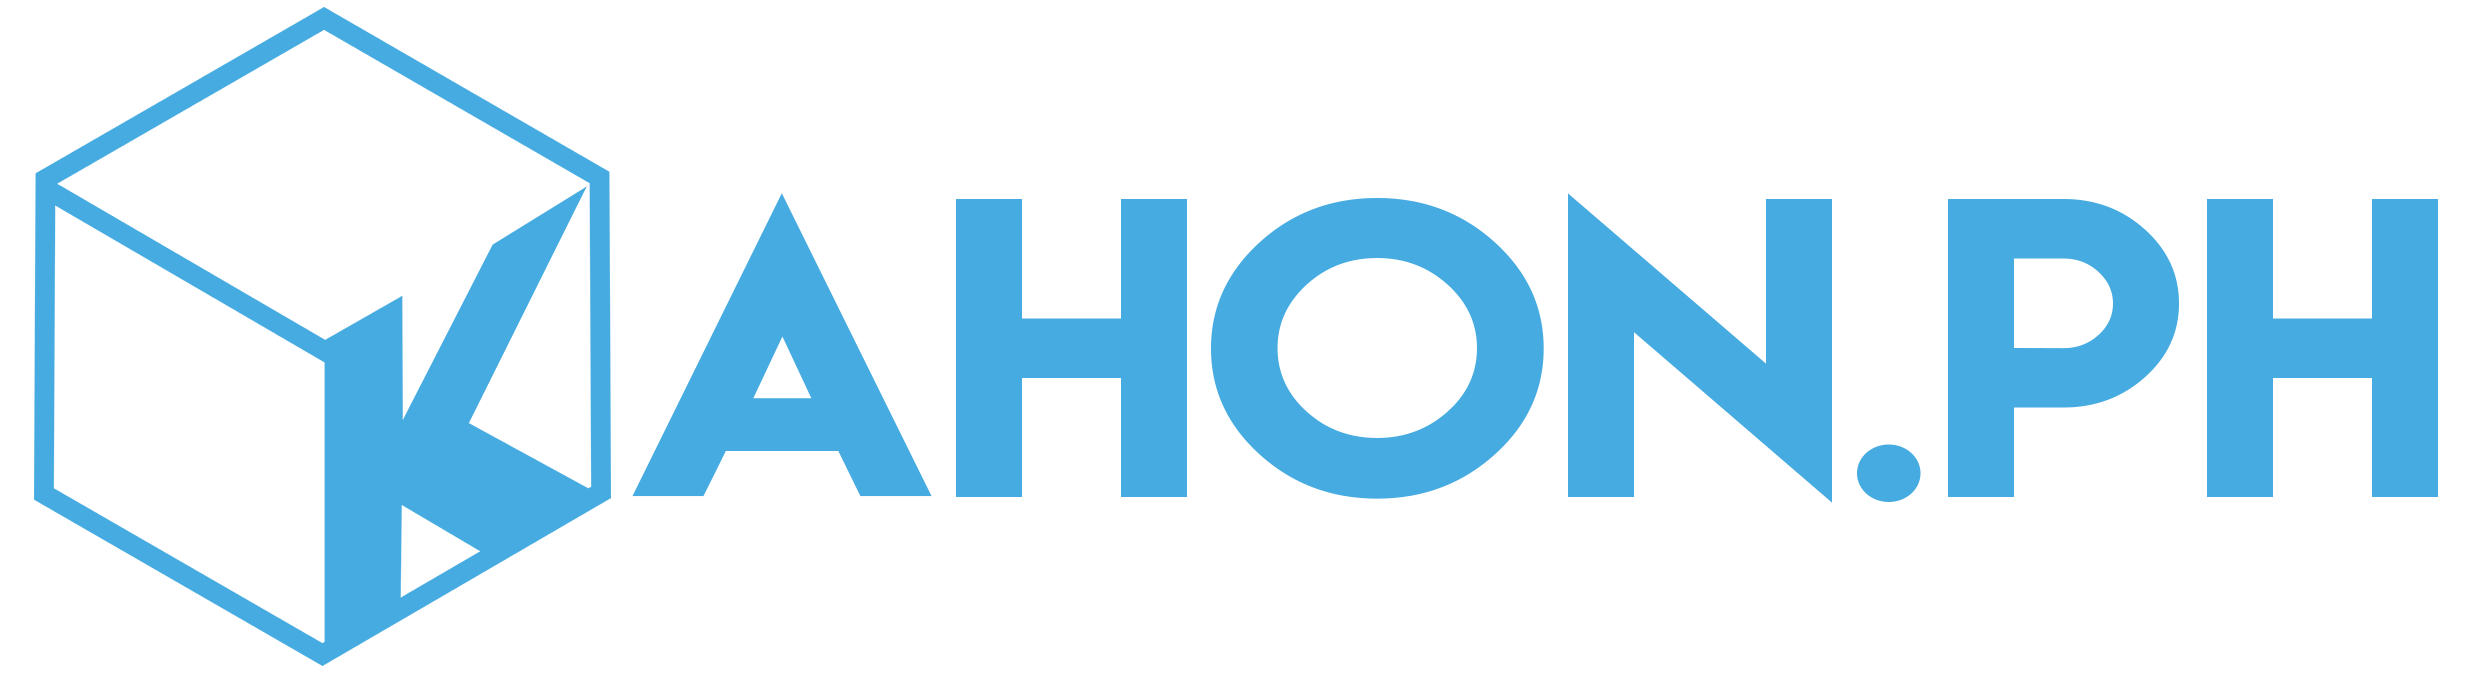 Kahon.ph Logo